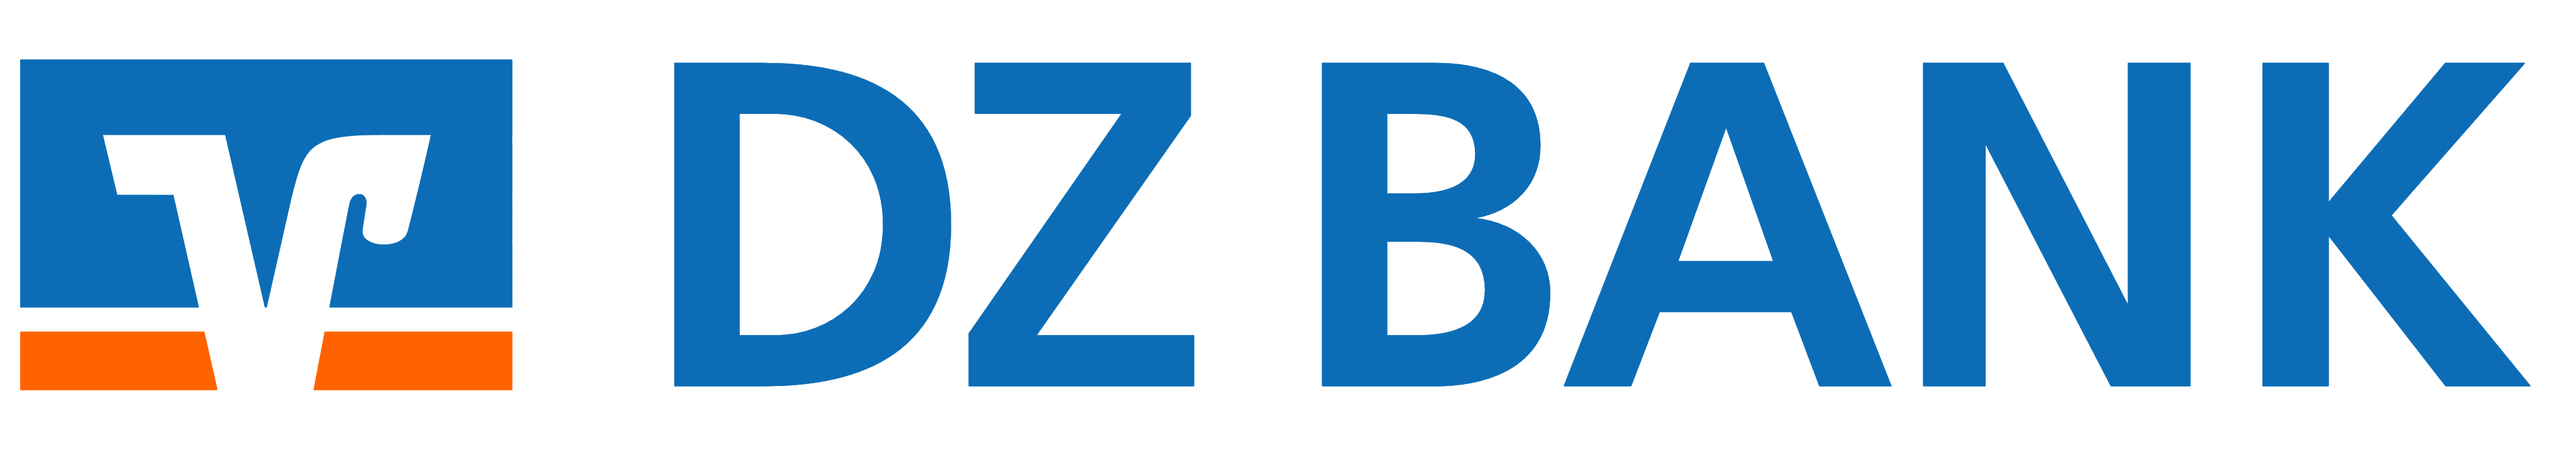 DZ Bank logo, logotype